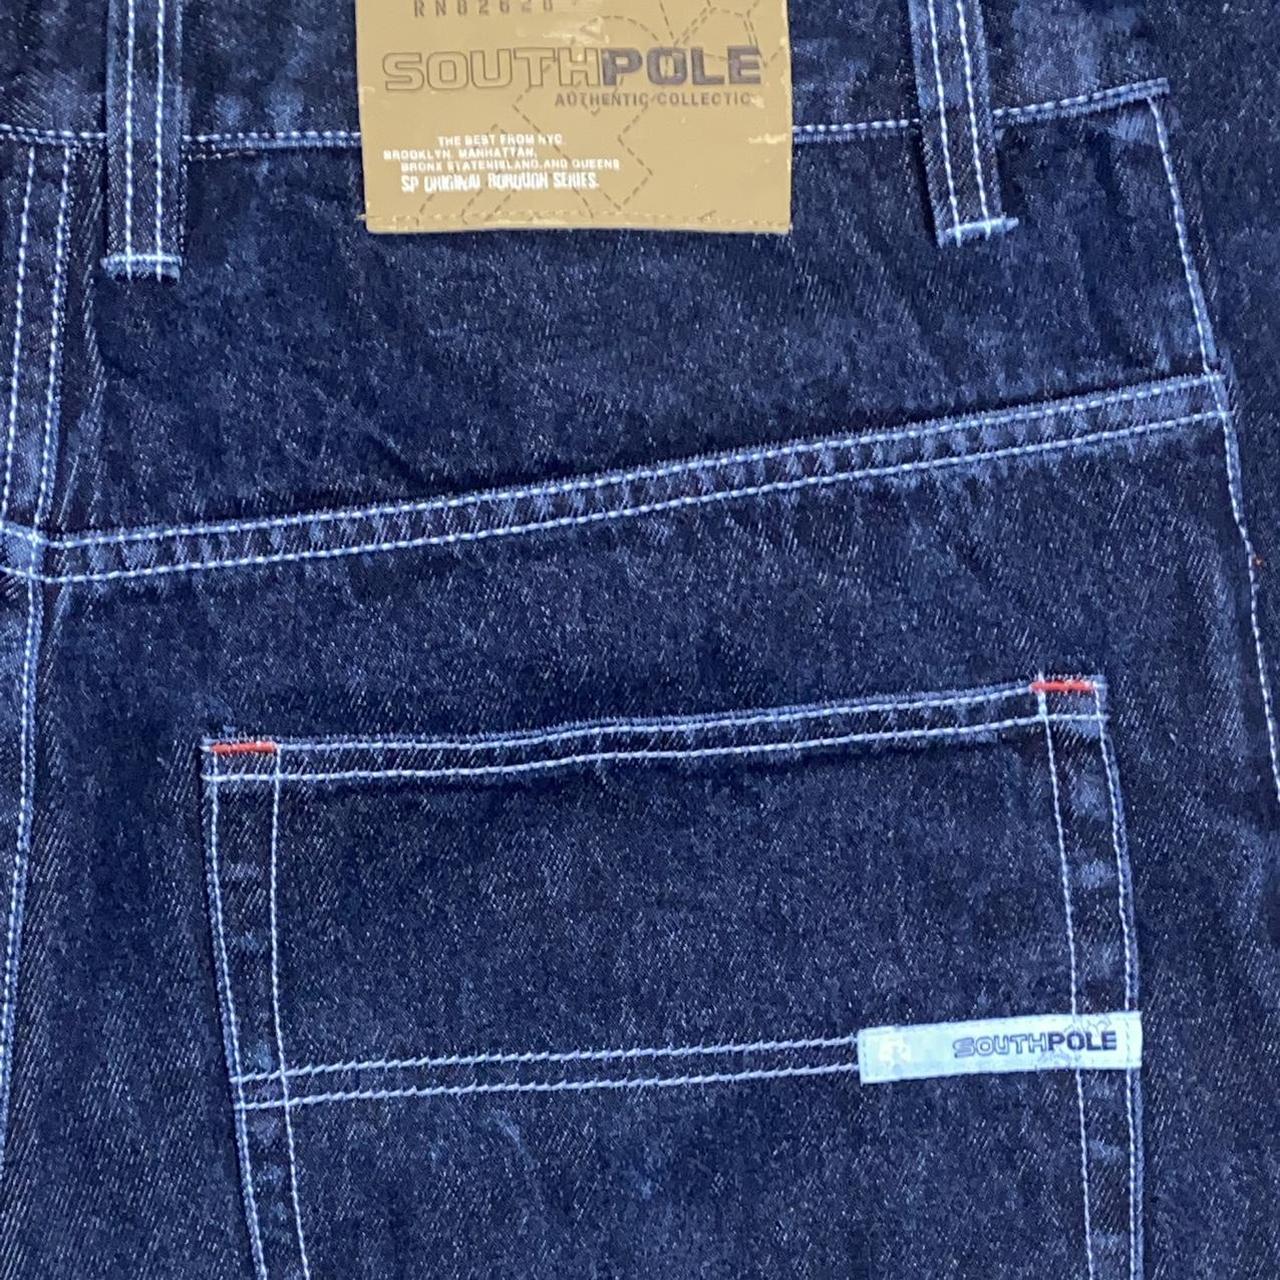 Vintage Y2K Southpole jeans Jeans have a blue tint... - Depop